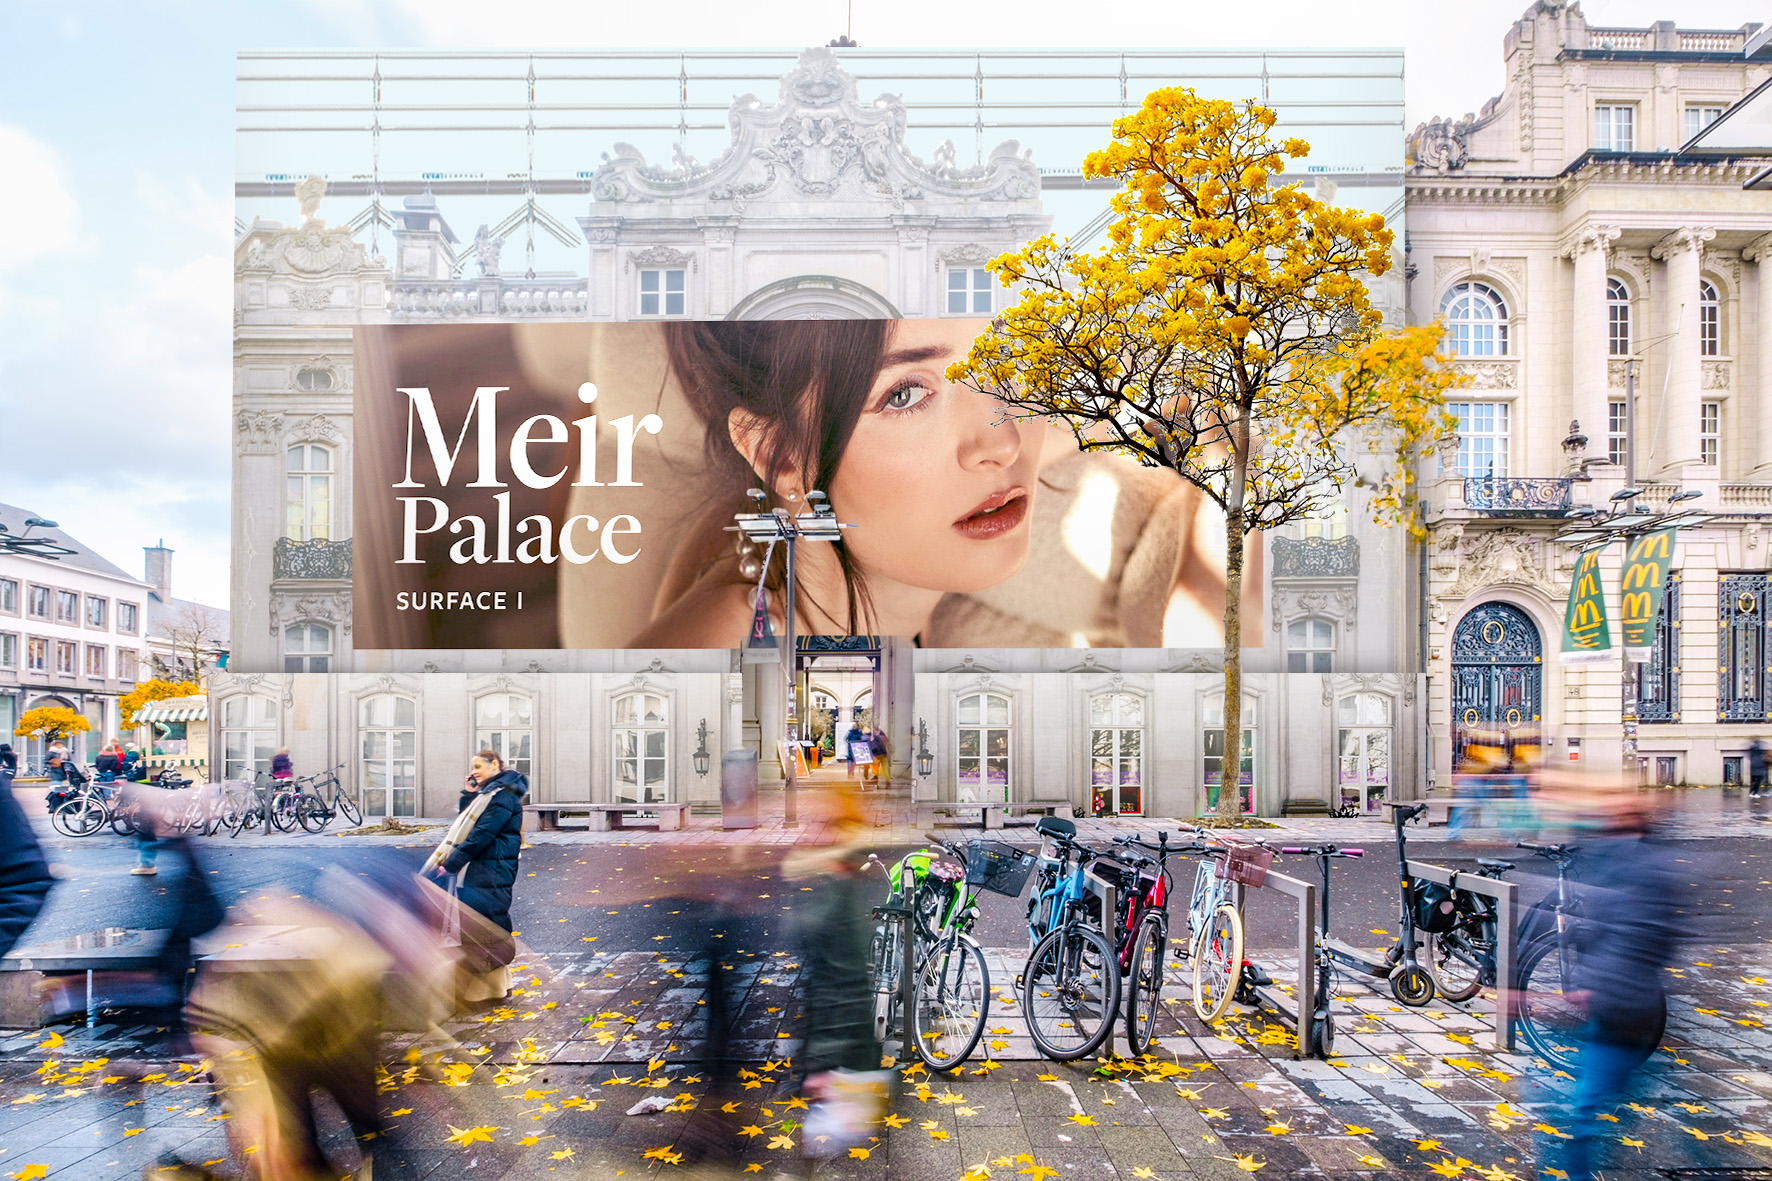 Antwerp_Meir Palace_Surface I_I.jpg